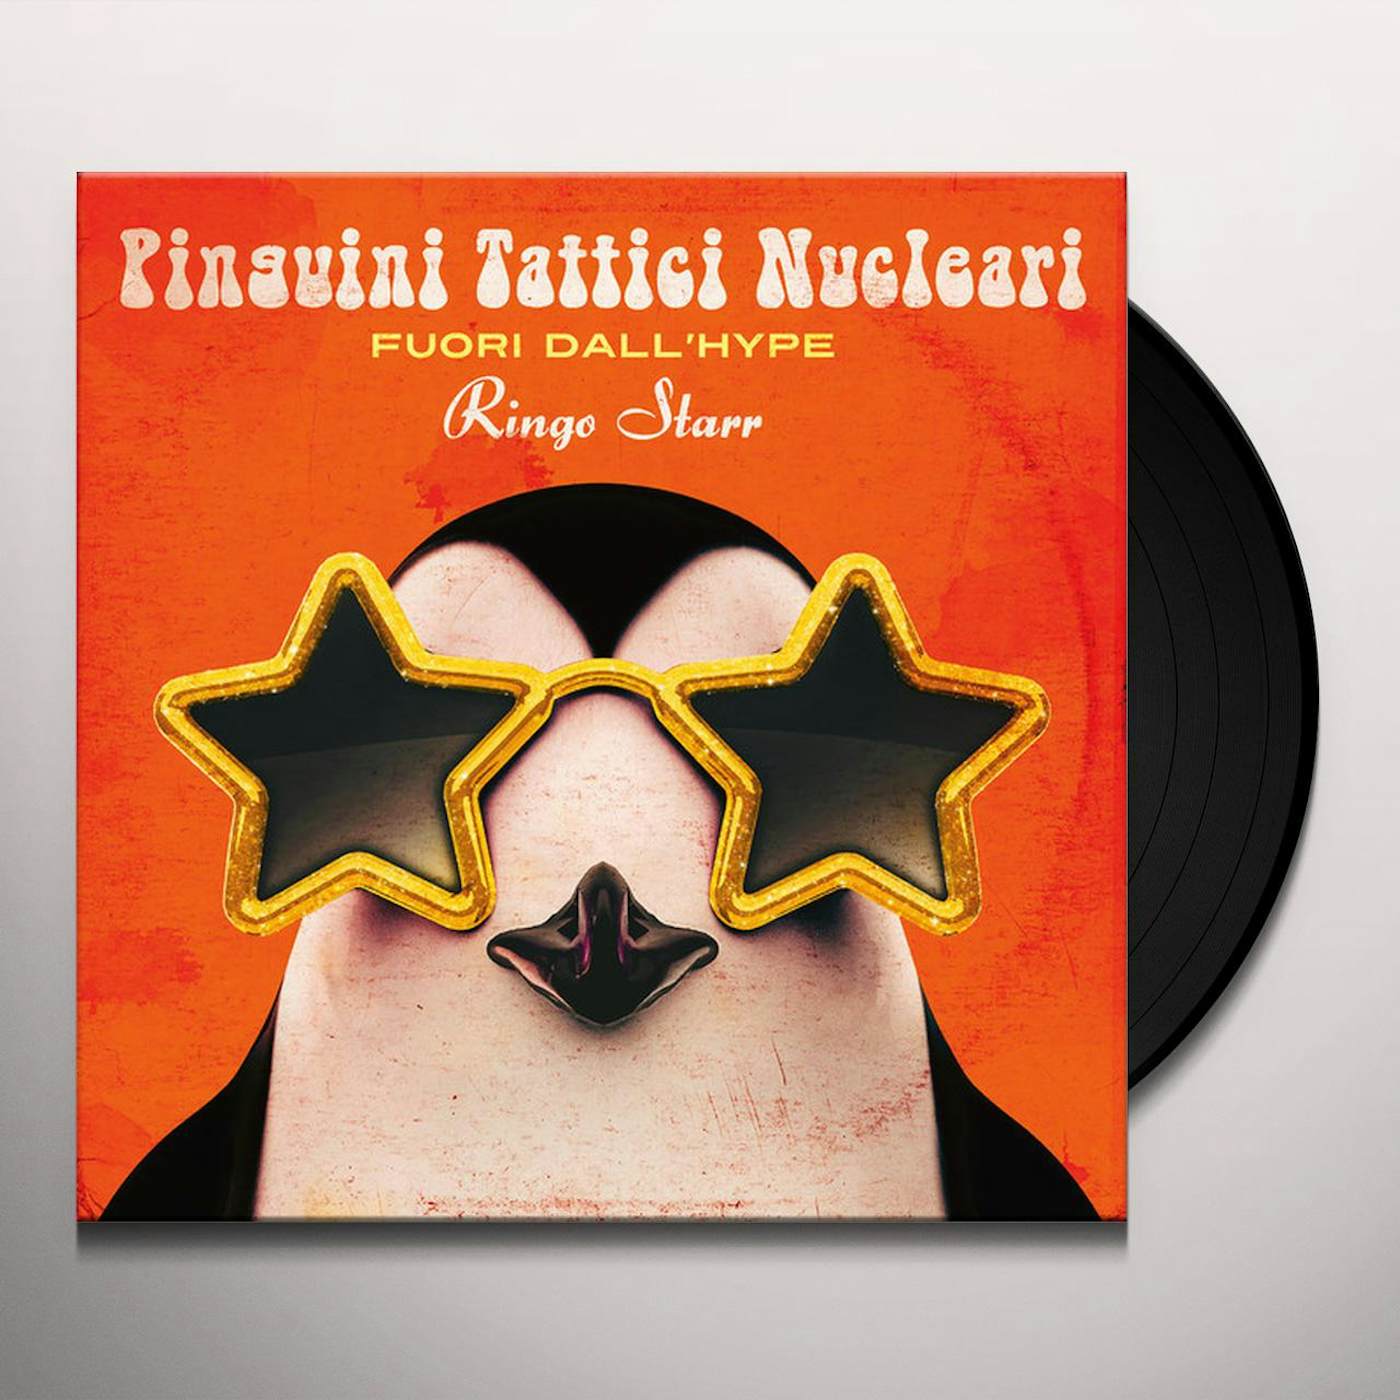 Pinguini Tattici Nucleari FUORI DALL HYPE RINGO STARR Vinyl Record